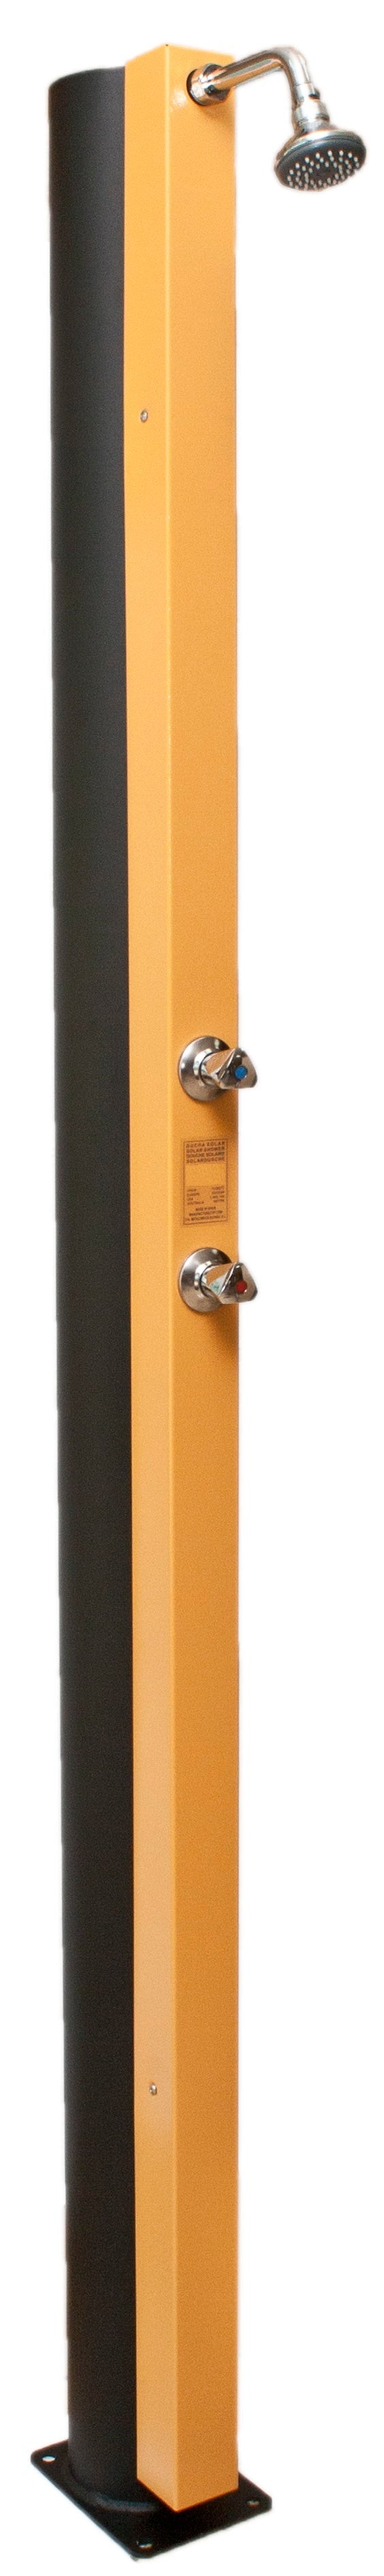 Douche Solaire Orange - avec accessoire, Robinet - 30L clicktofournisseur.com